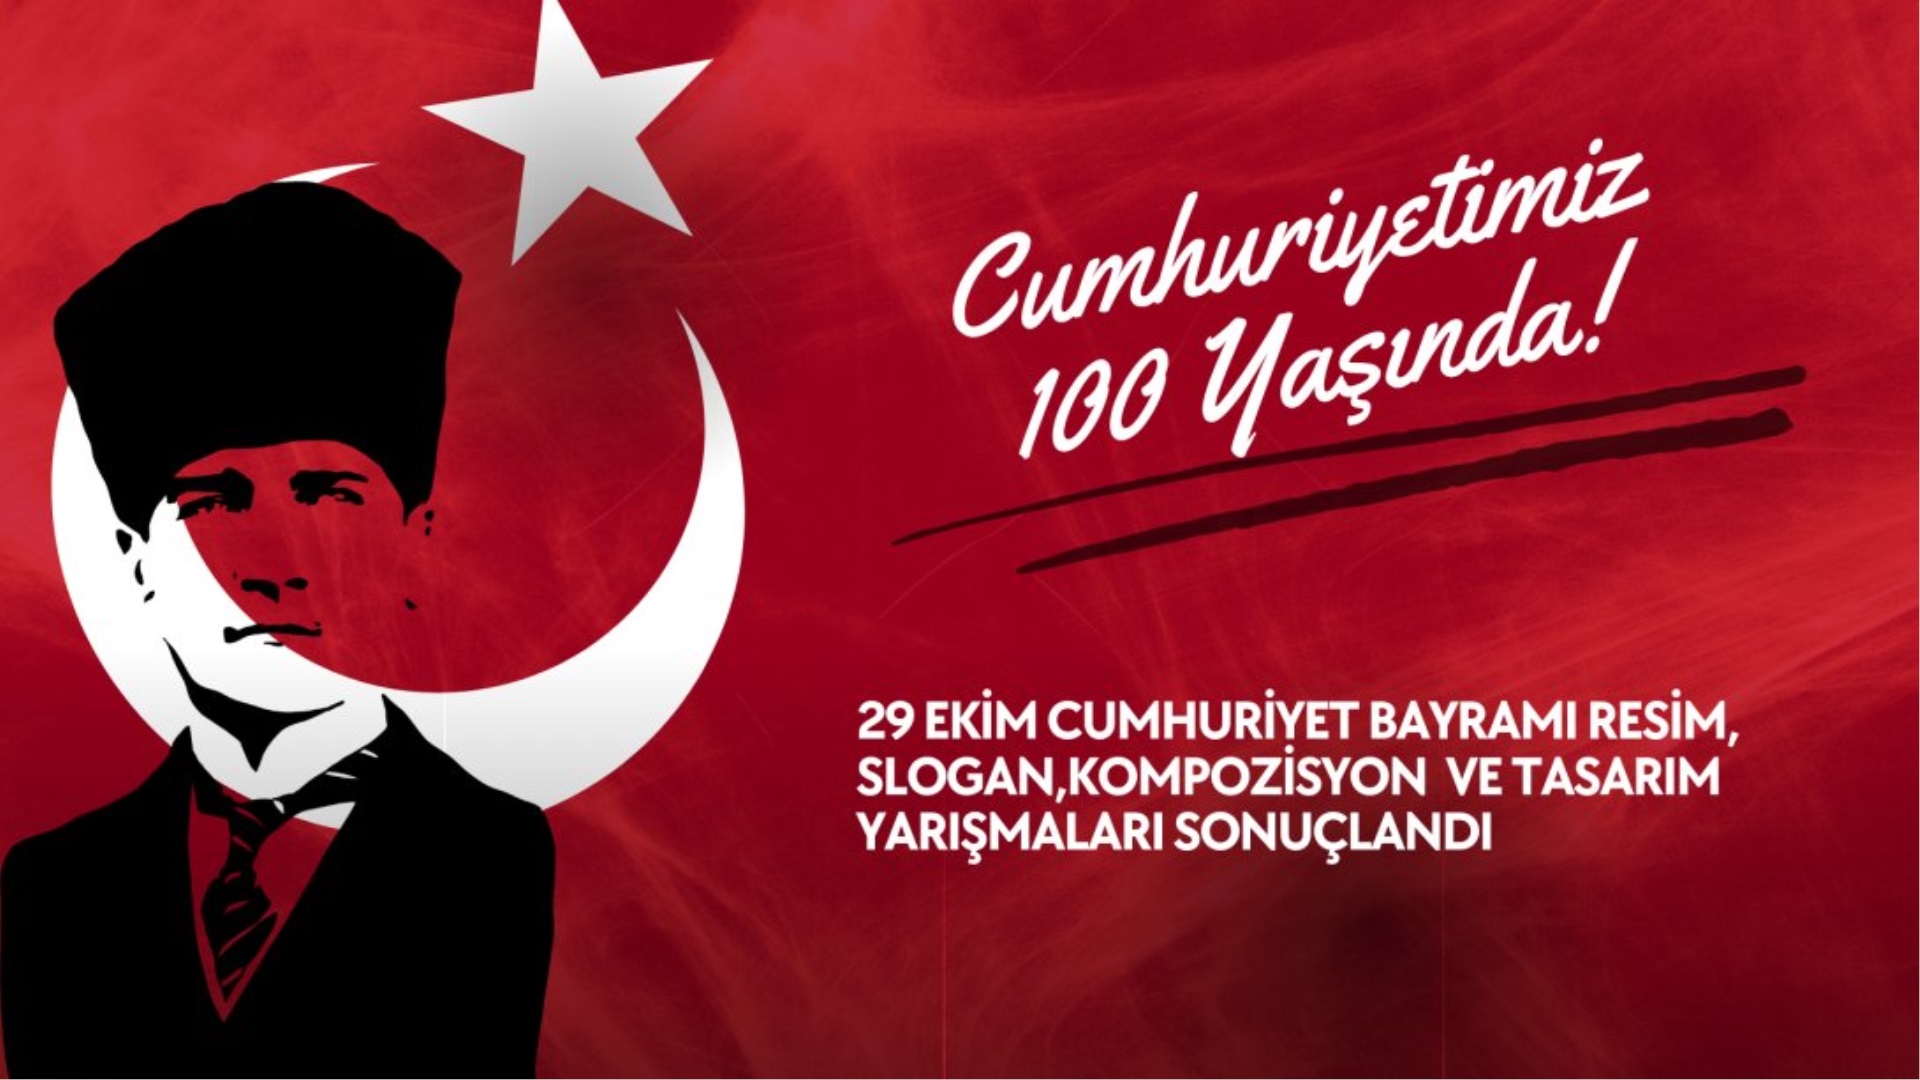 Dalaman Ceza İnfaz Kurumu’nda Gazi Mustafa Kemal Atatürk önderliğinde kurulan Cumhuriyetimizin  100.yılı coşkusuyla kutlandı.